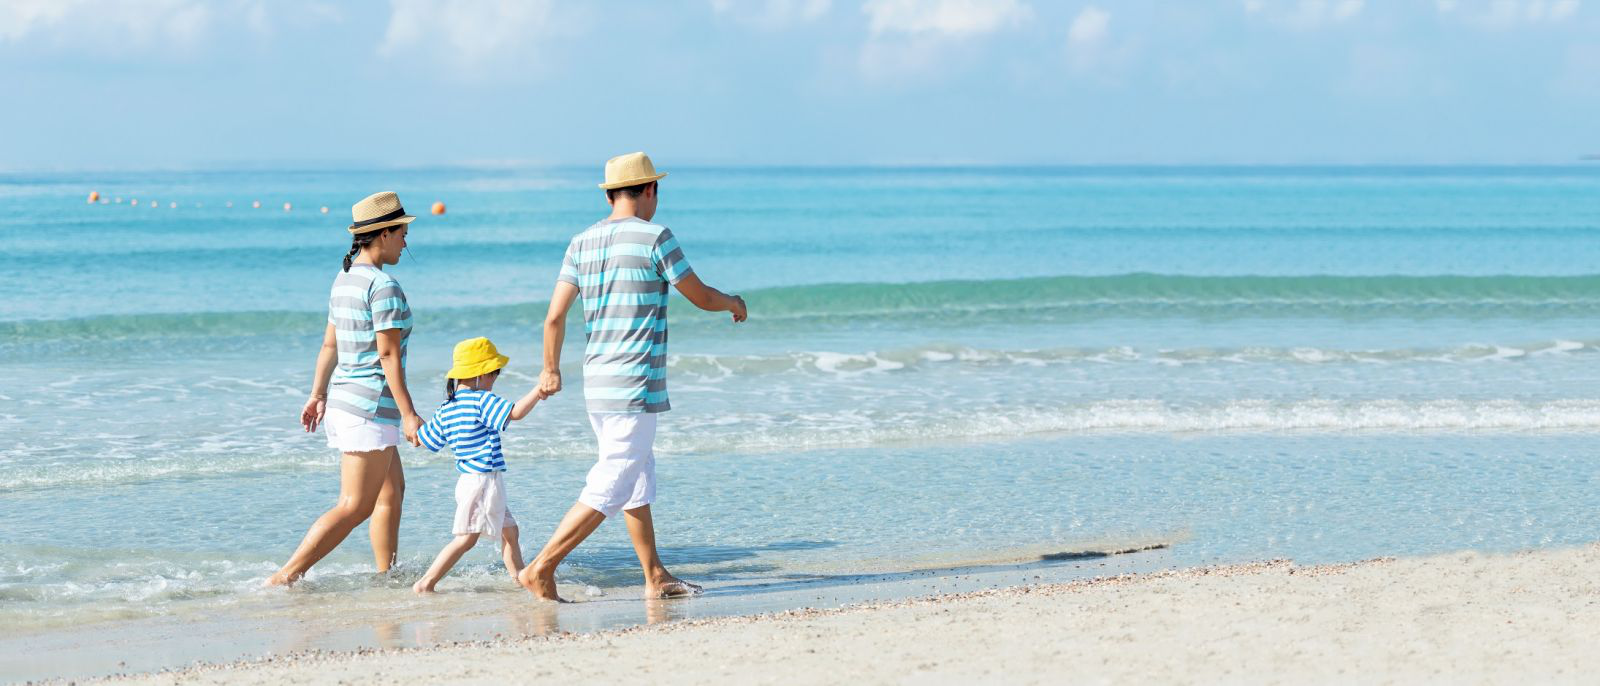 Du lịch biển là một trong những hoạt động nghỉ dưỡng được các gia đình yêu thích nhất. 